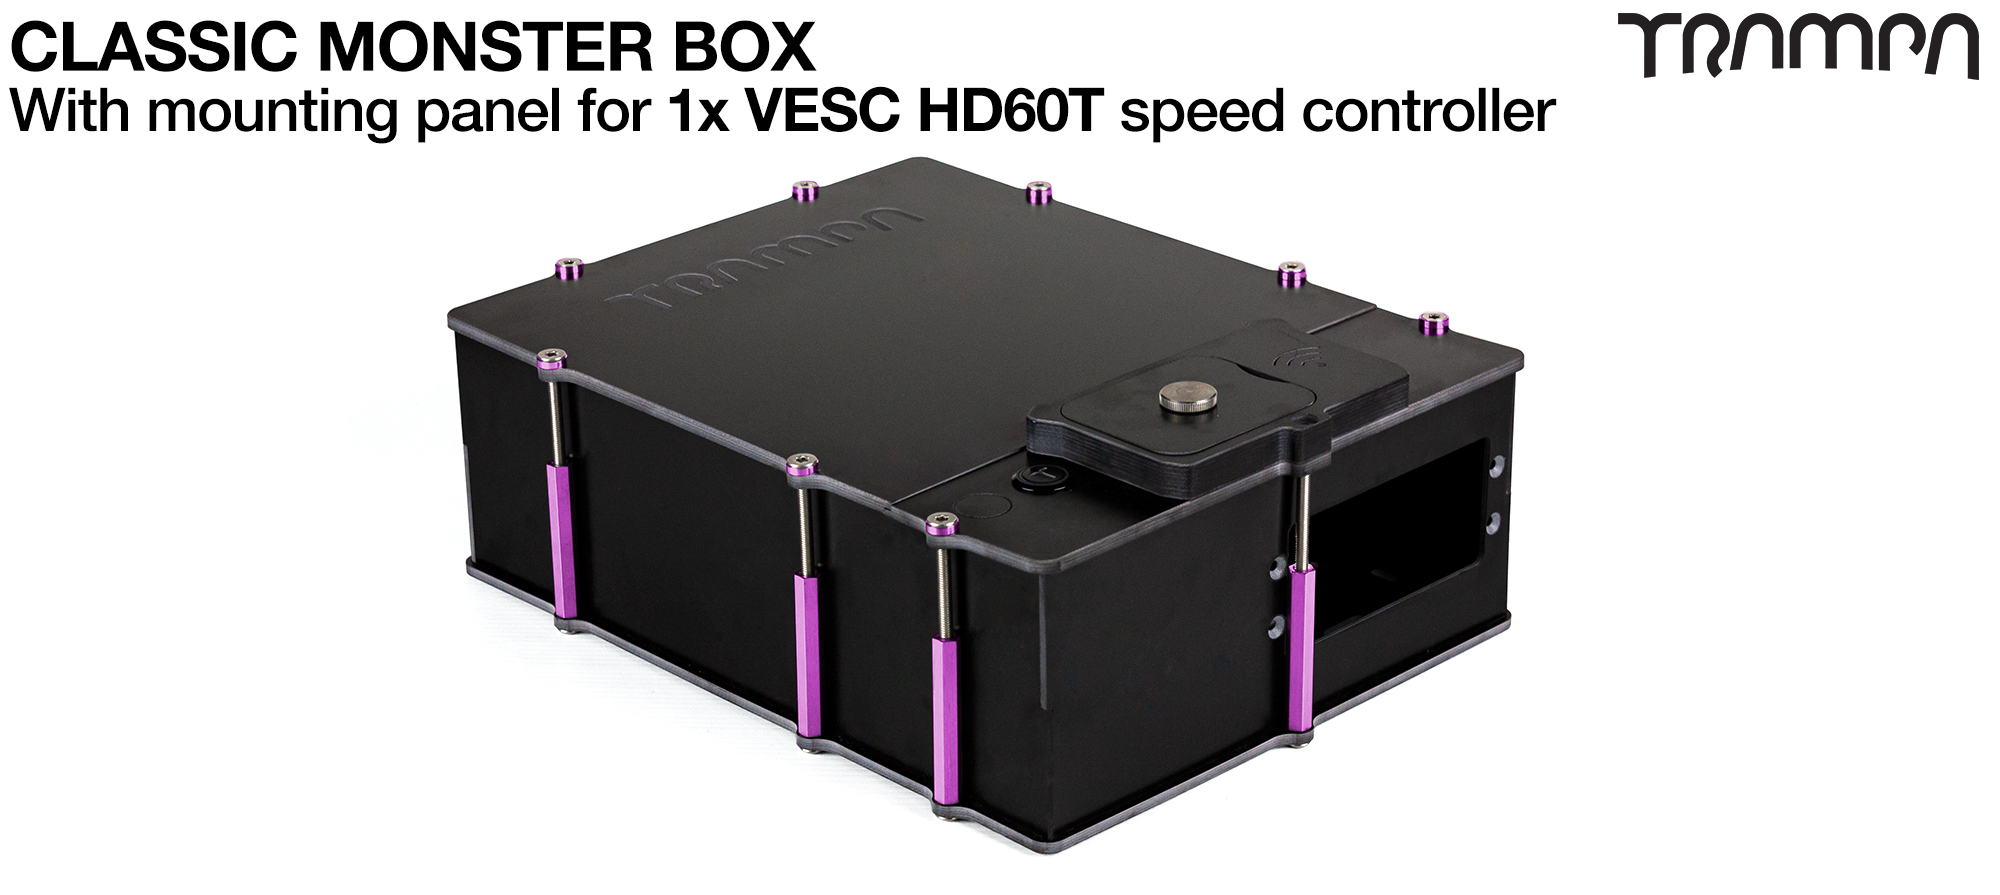 Classic MONSTER Box fits 1x VESC HD-60T (£175)